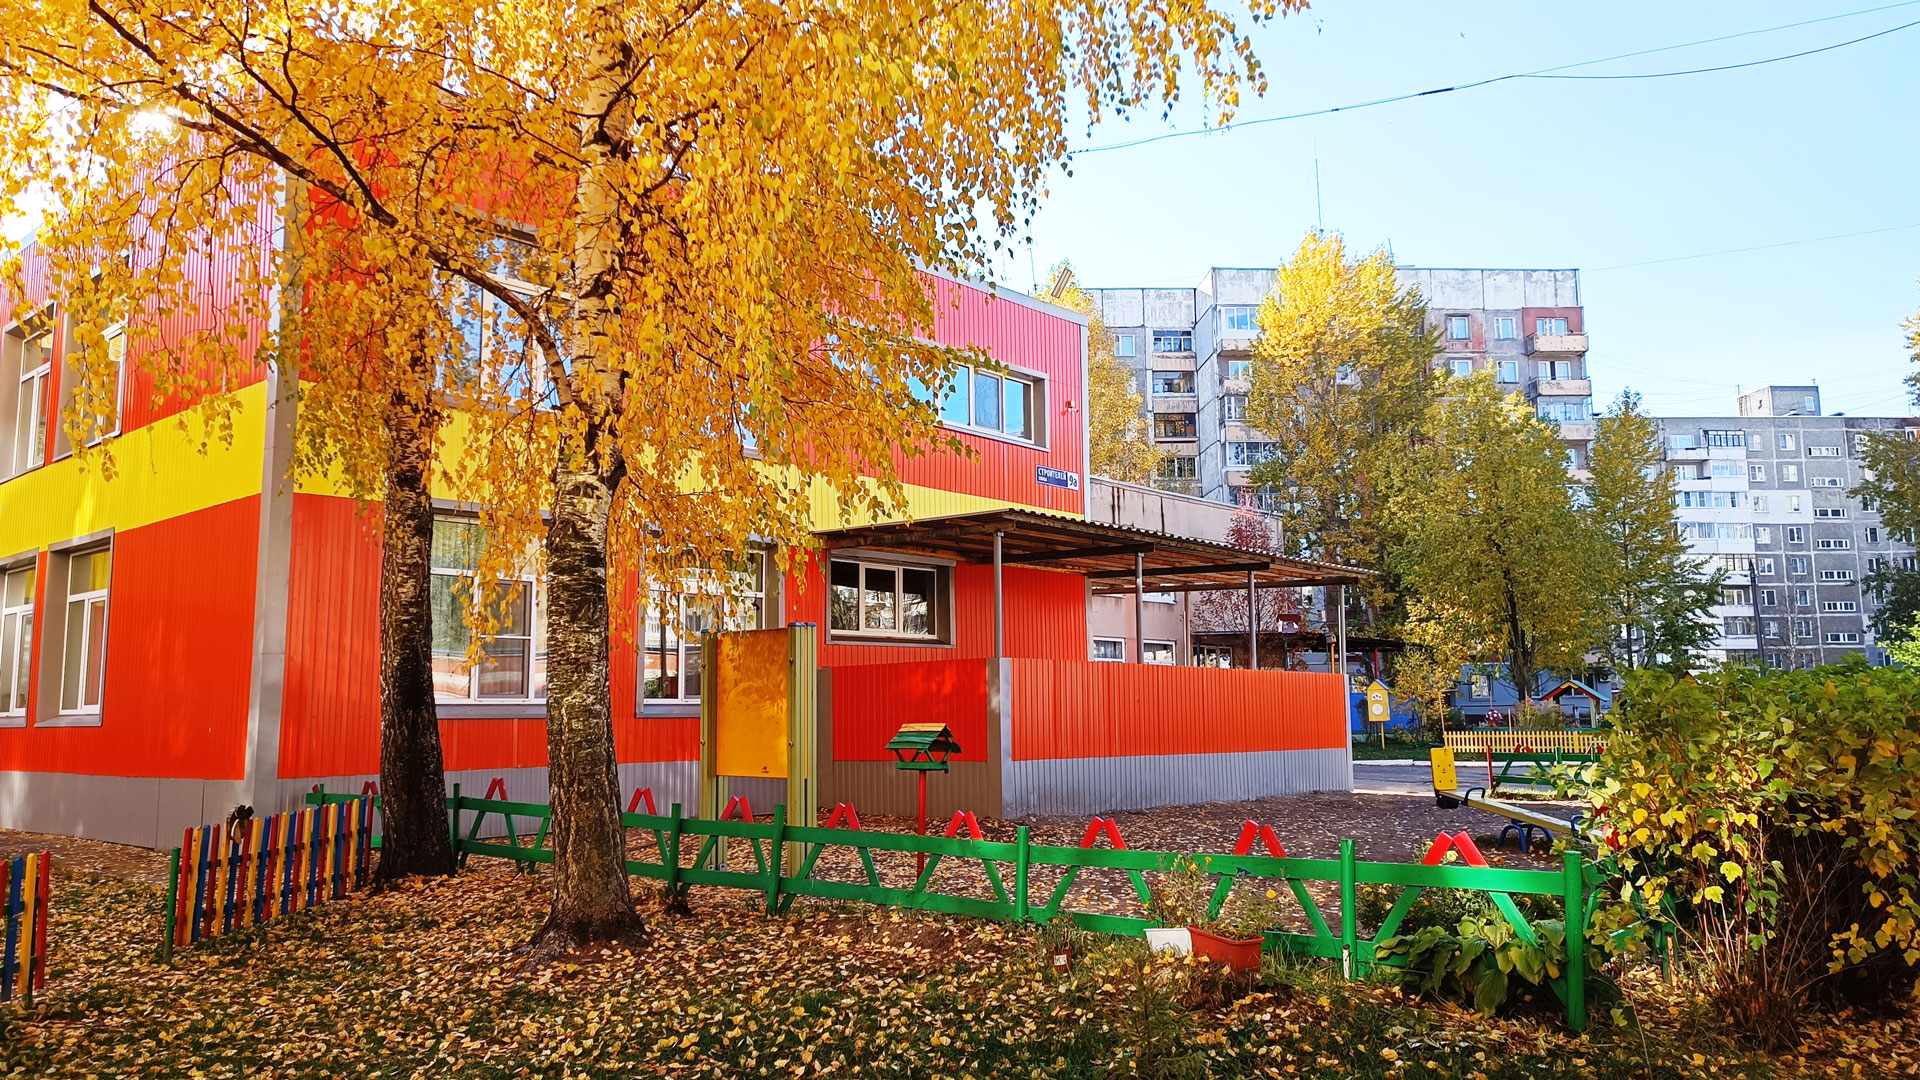 Детский сад 109 Ярославль: общий вид здания д/с.